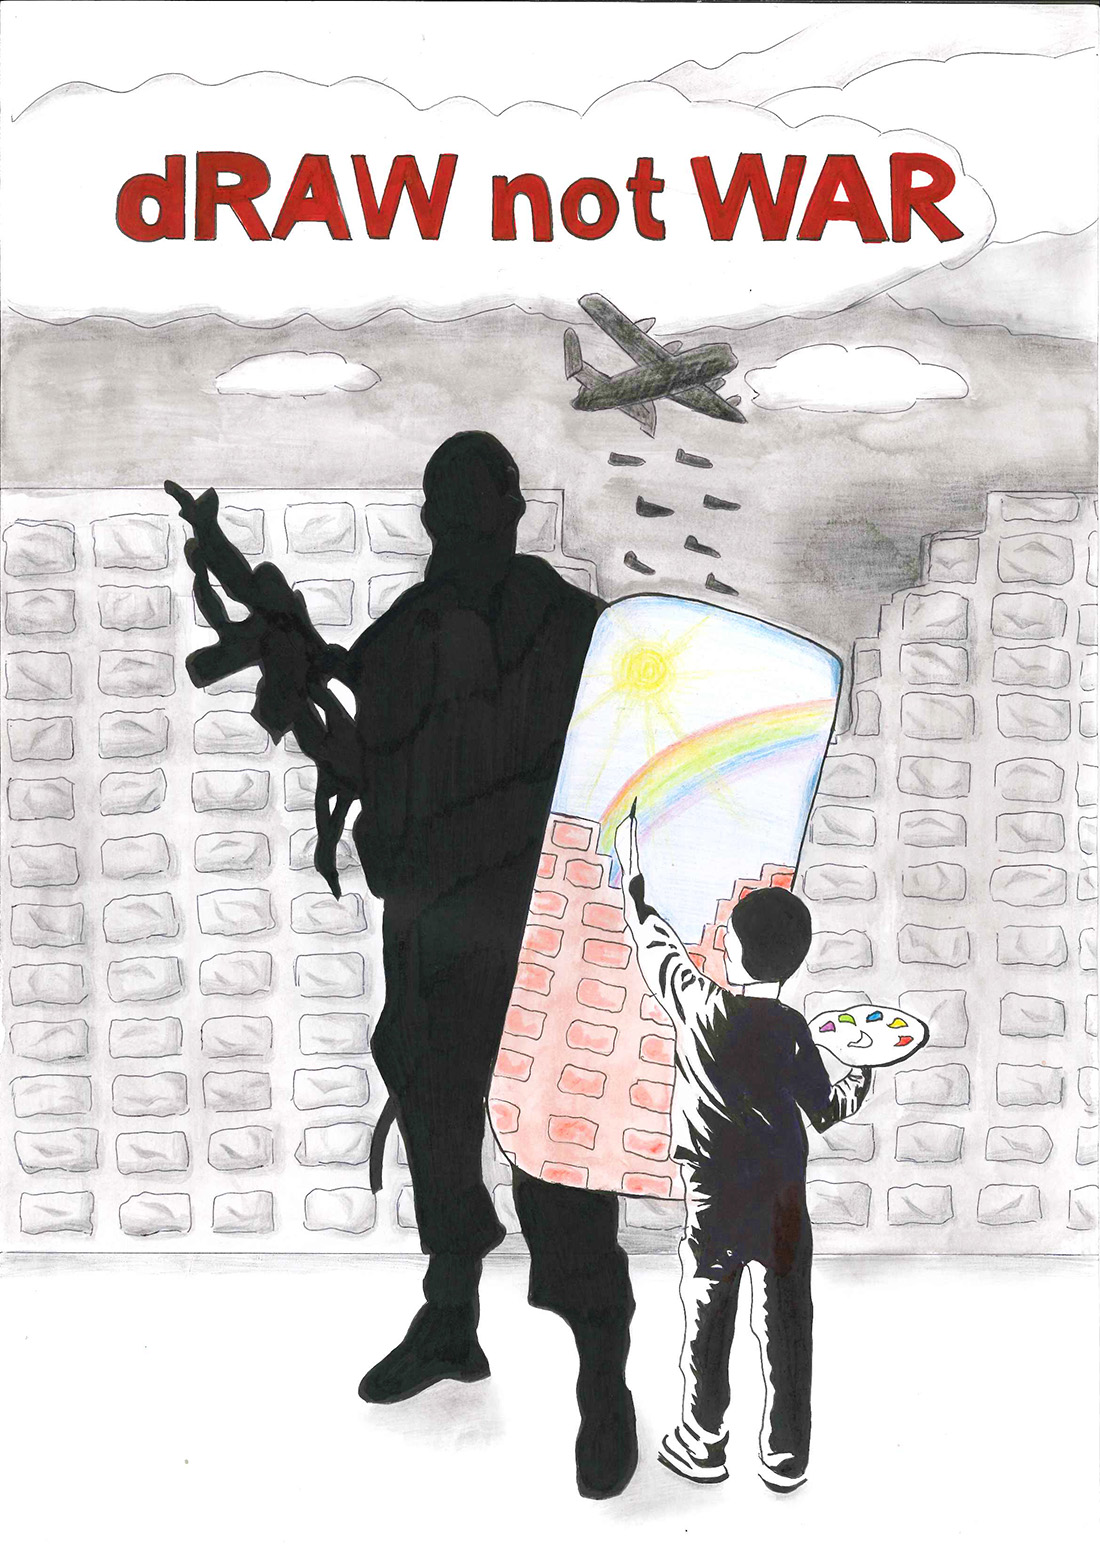 Opera per il draw not war di Uremassi Miriam: un bambino dipinge un arcobaleno sullo scudo anti sommossa di un poliziotto, mentre sullo sfondo un aereo lascia cadere delle bombe su alcuni palazzi